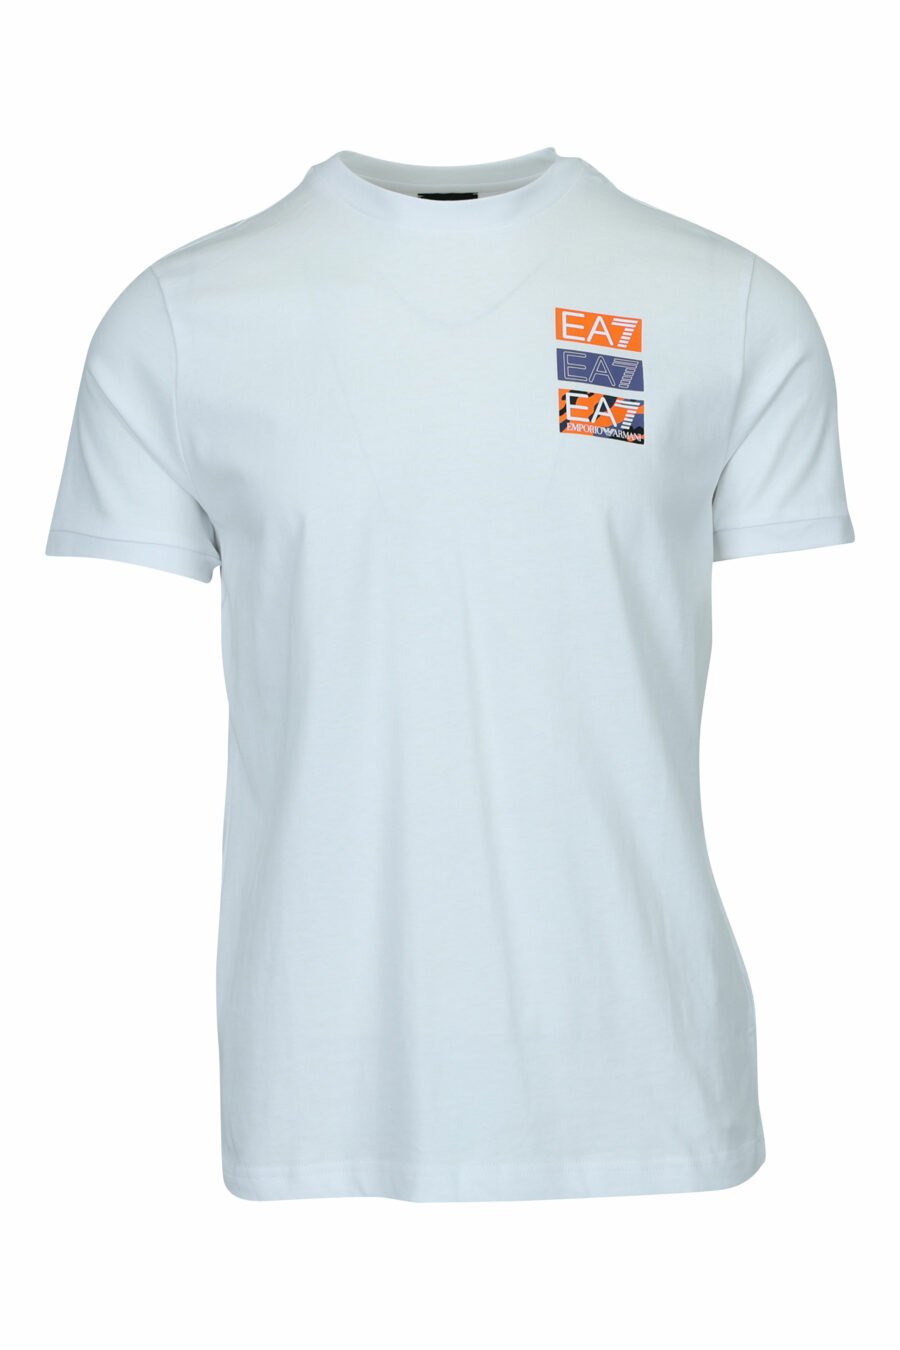 T-shirt blanc avec camouflage "lux identity" minilogue et imprimé dans le dos - 8057970669838